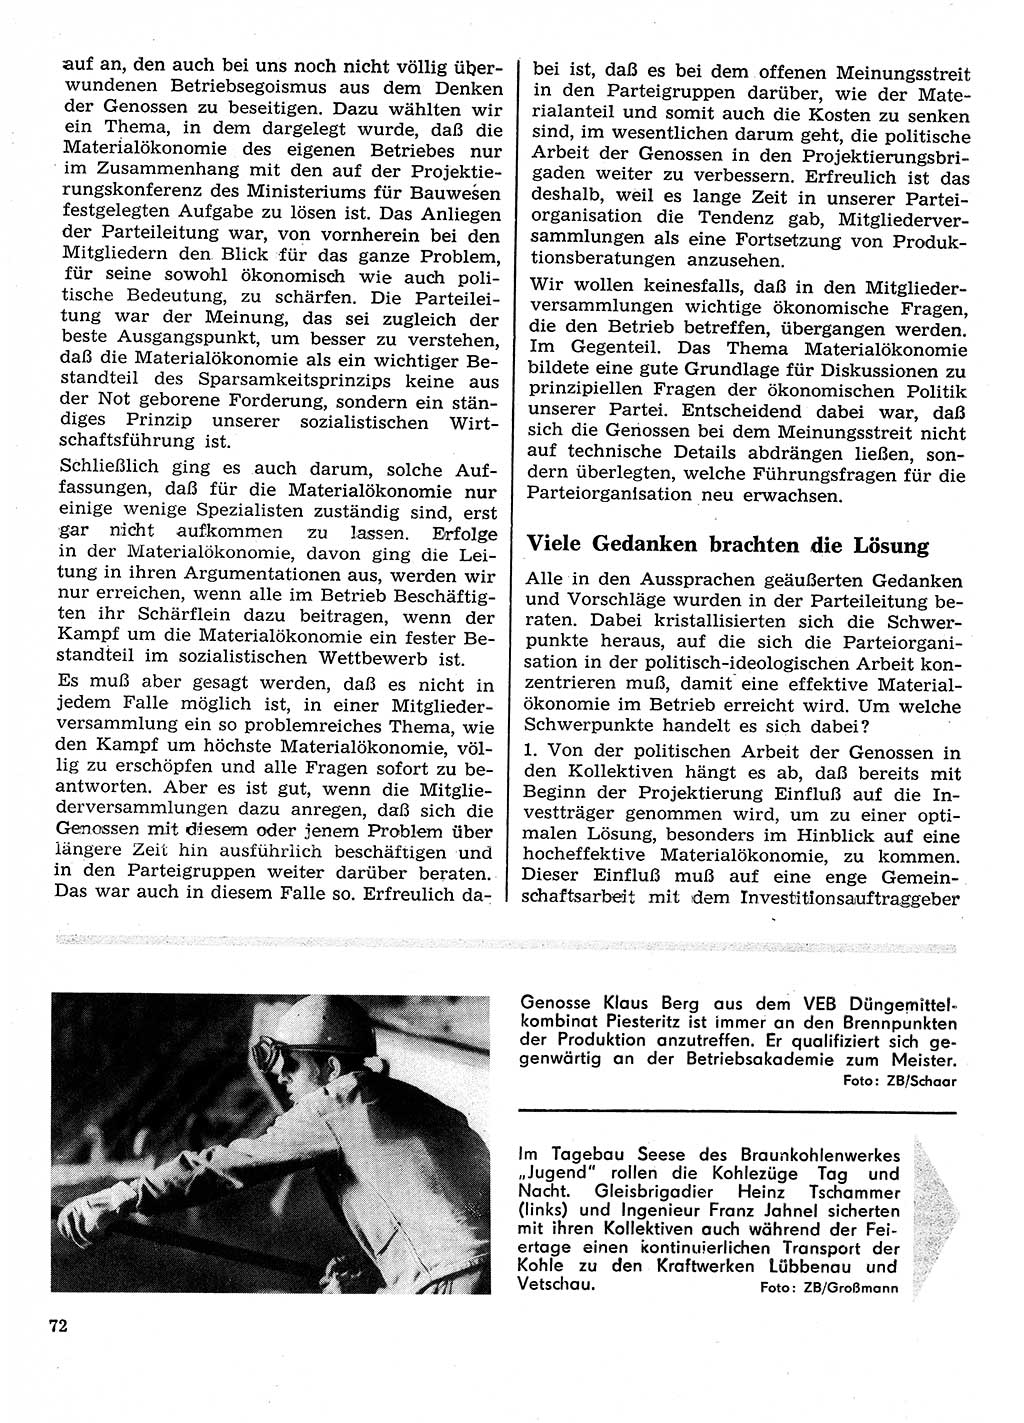 Neuer Weg (NW), Organ des Zentralkomitees (ZK) der SED (Sozialistische Einheitspartei Deutschlands) für Fragen des Parteilebens, 26. Jahrgang [Deutsche Demokratische Republik (DDR)] 1971, Seite 72 (NW ZK SED DDR 1971, S. 72)